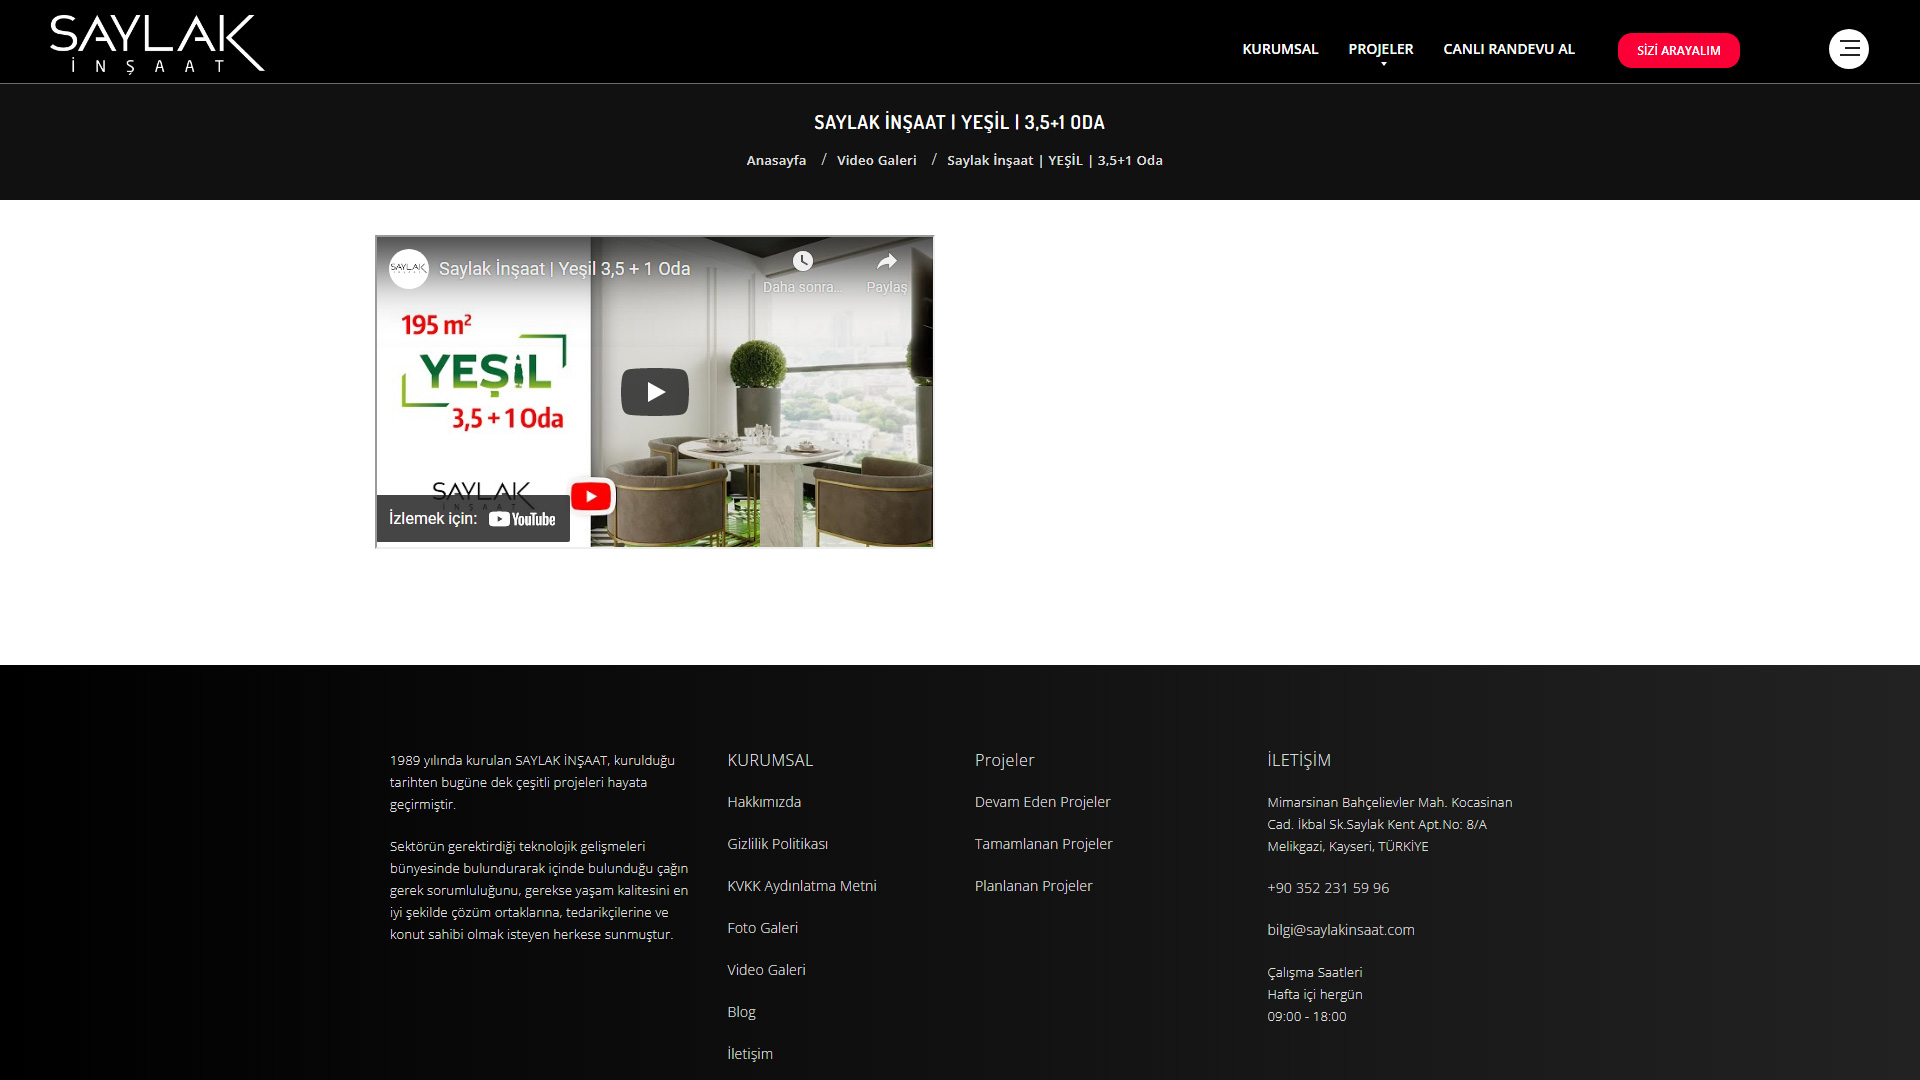 Video Galeri Detay Sayfası